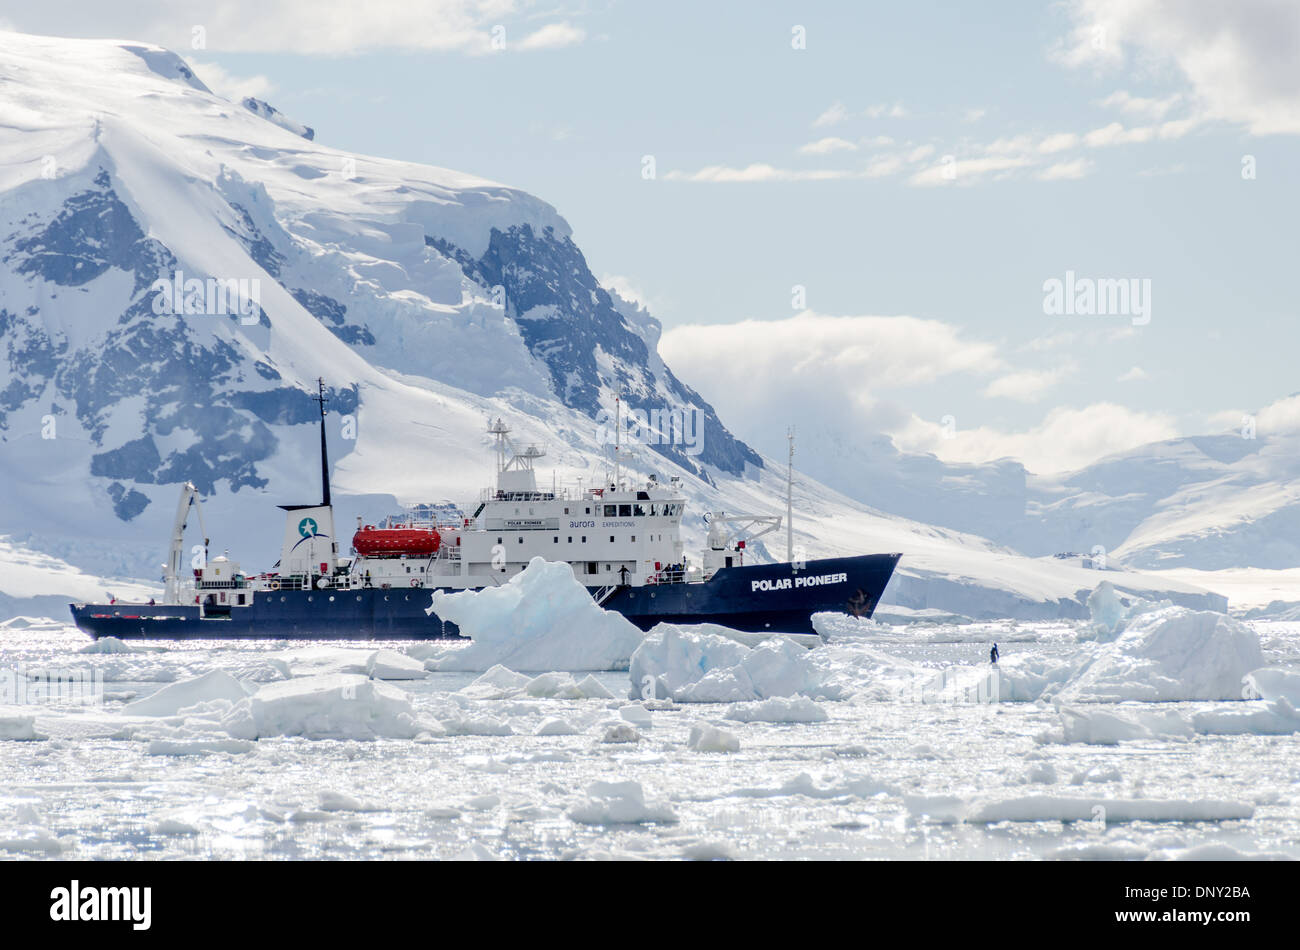 Antarktis - ein Schiff (Polar Pioneer) unter den brash Eis und Eisberge von Neko Harbour, Antarktis. Stockfoto